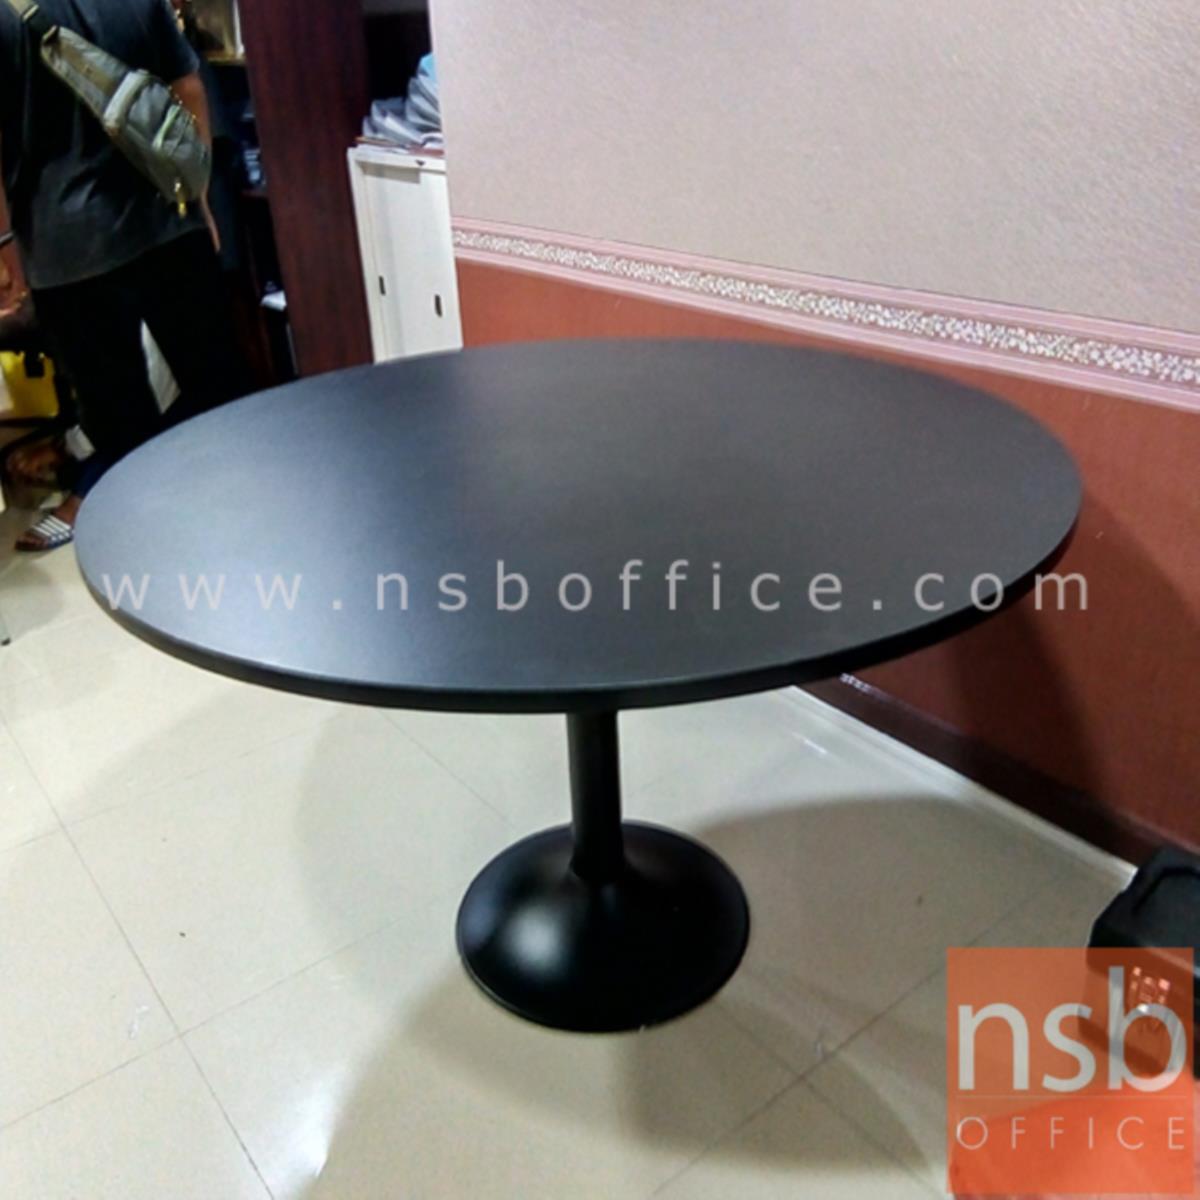 โต๊ะประชุมทรงวงกลม  3, 4 ที่นั่ง ขนาด 90Di, 120Di cm.  ขาเหล็กฐานกลมดำ